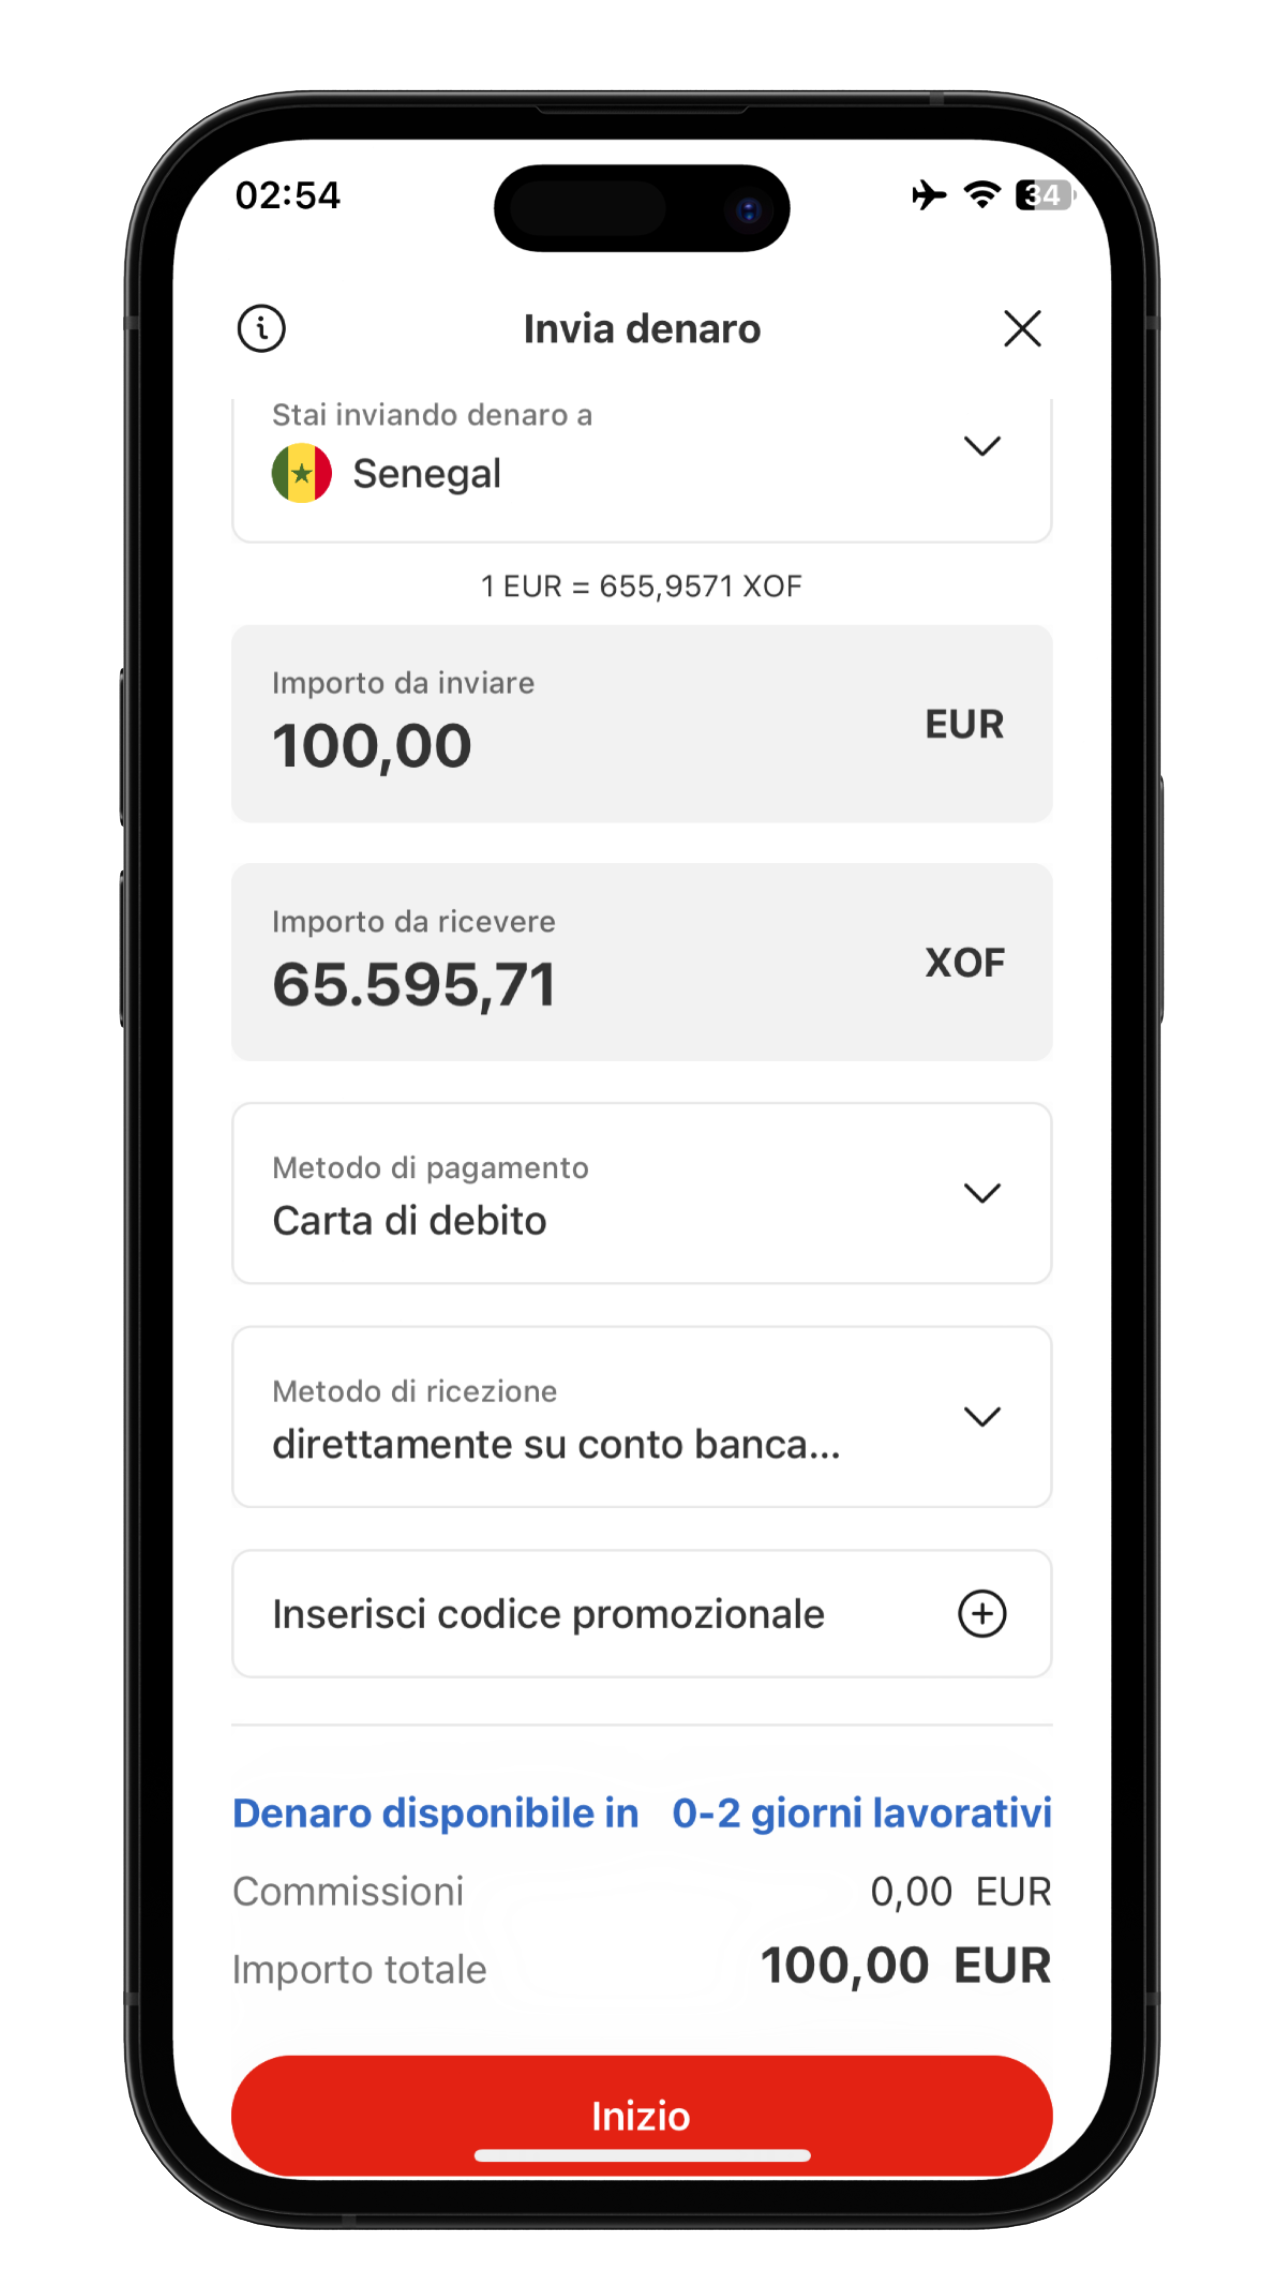 Schermata dell'app MoneyGram Money Transfer per inserire l'importo e inviare